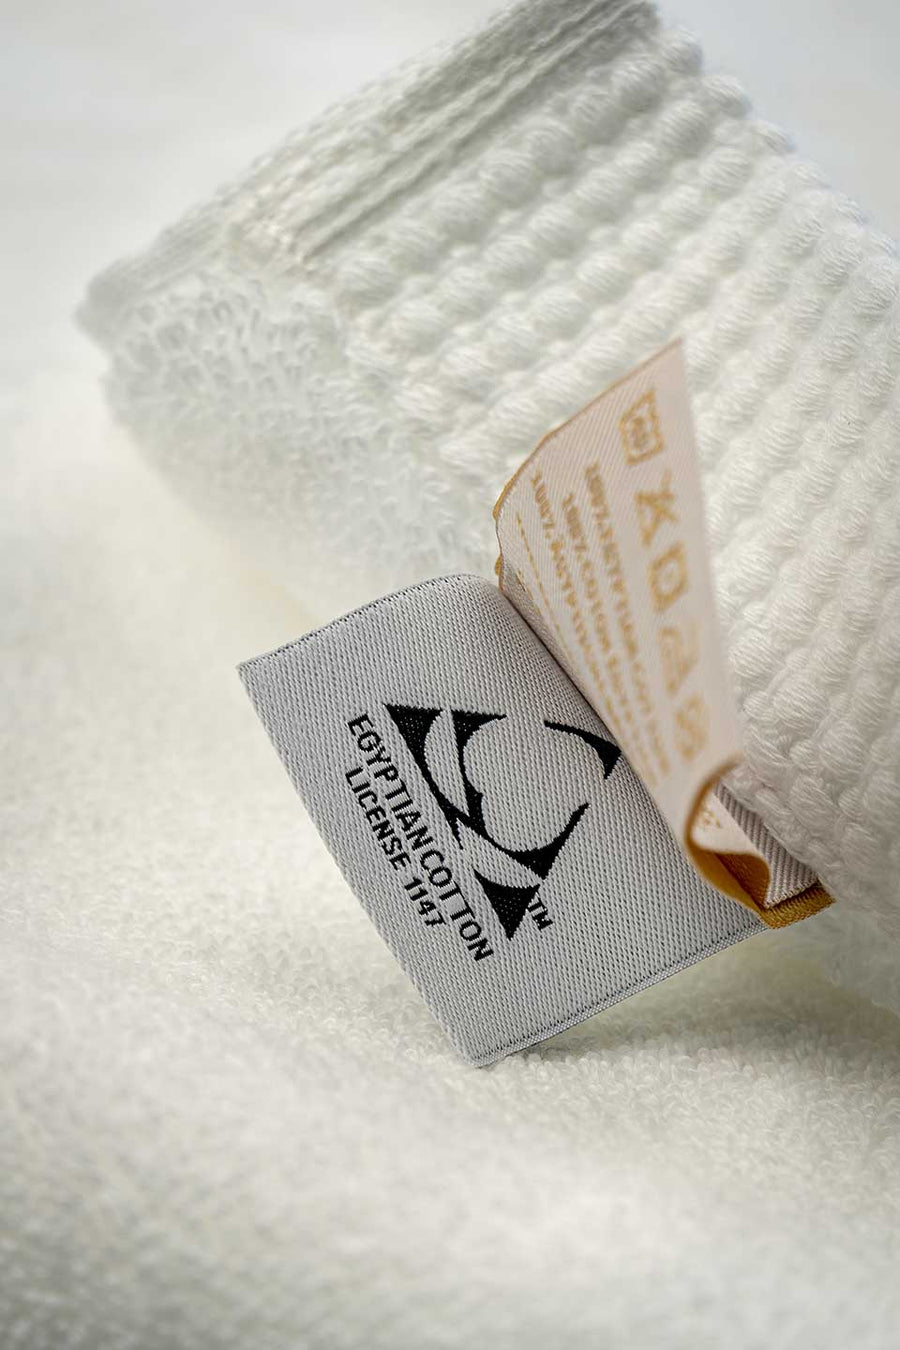 Egyptian Cotton™ seal on a white Egyptian Cotton™ Bath Mat.